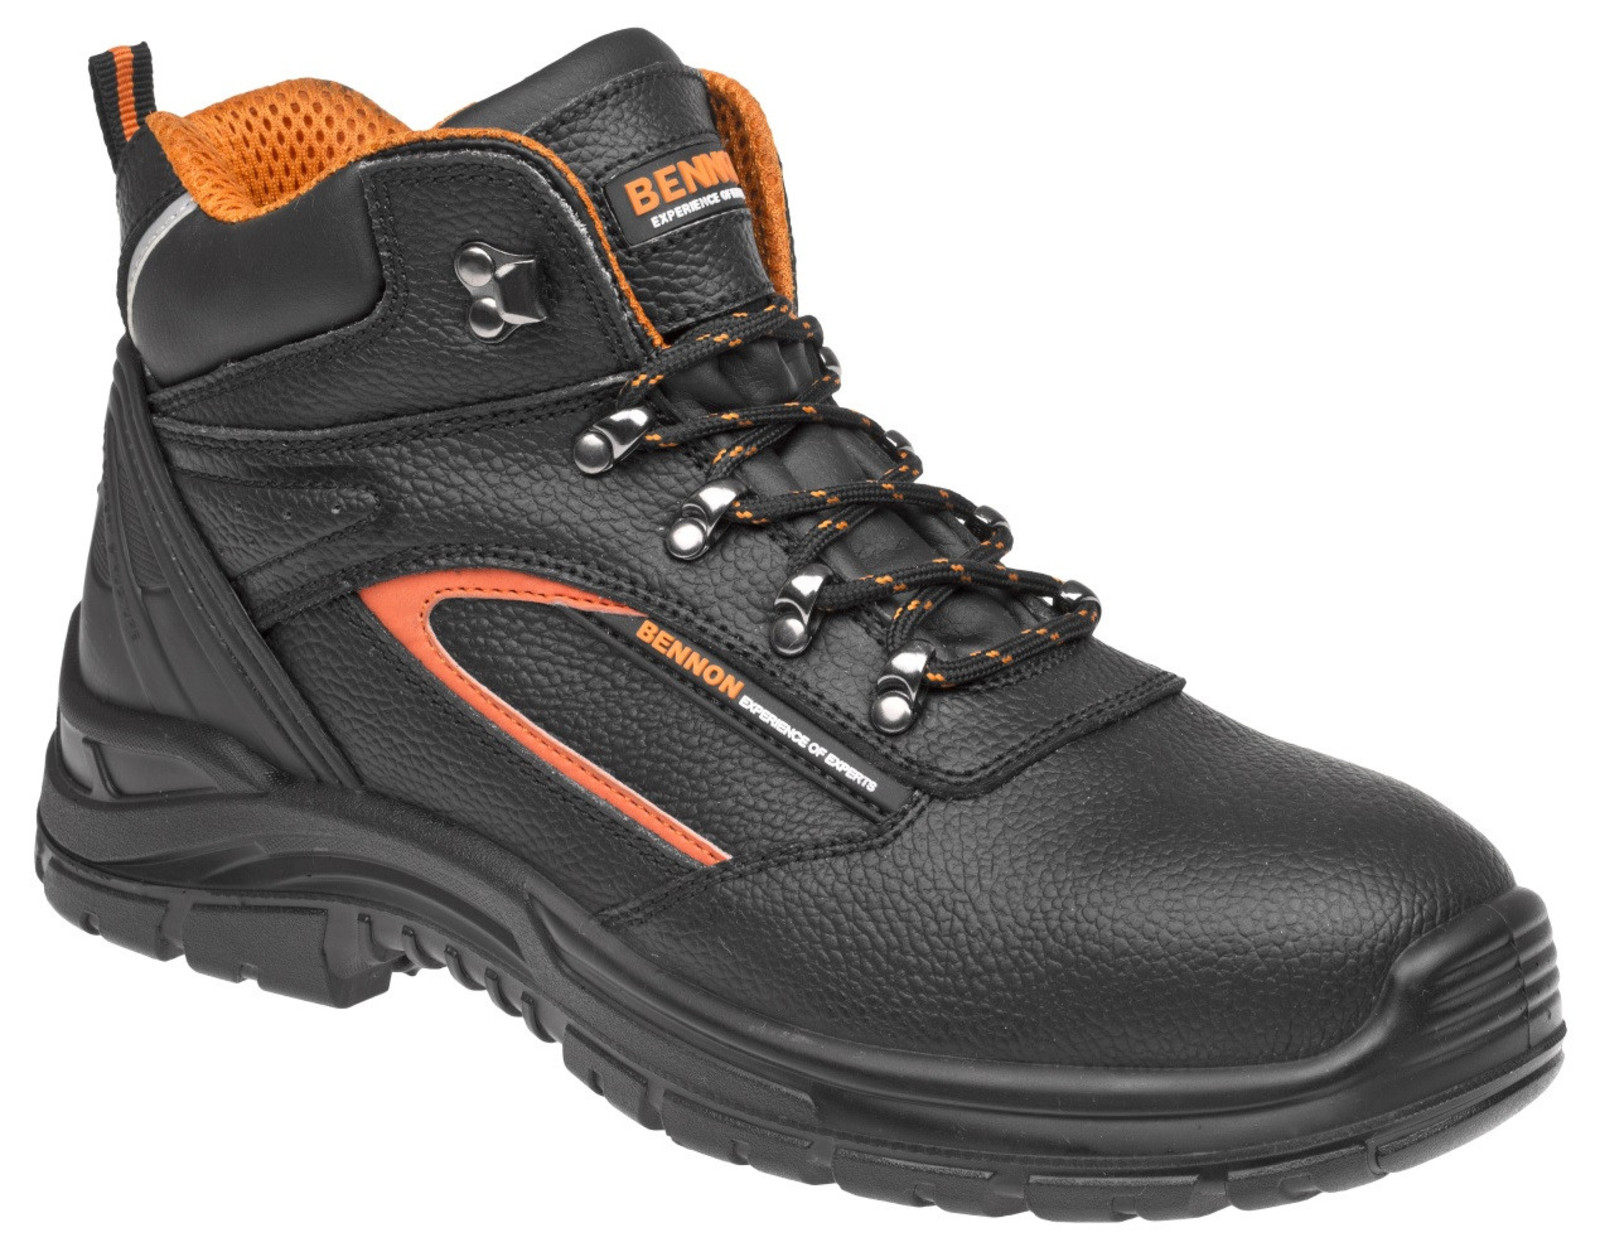 Pracovné topánky Bennon Fortis O2  - veľkosť: 45, farba: čierna